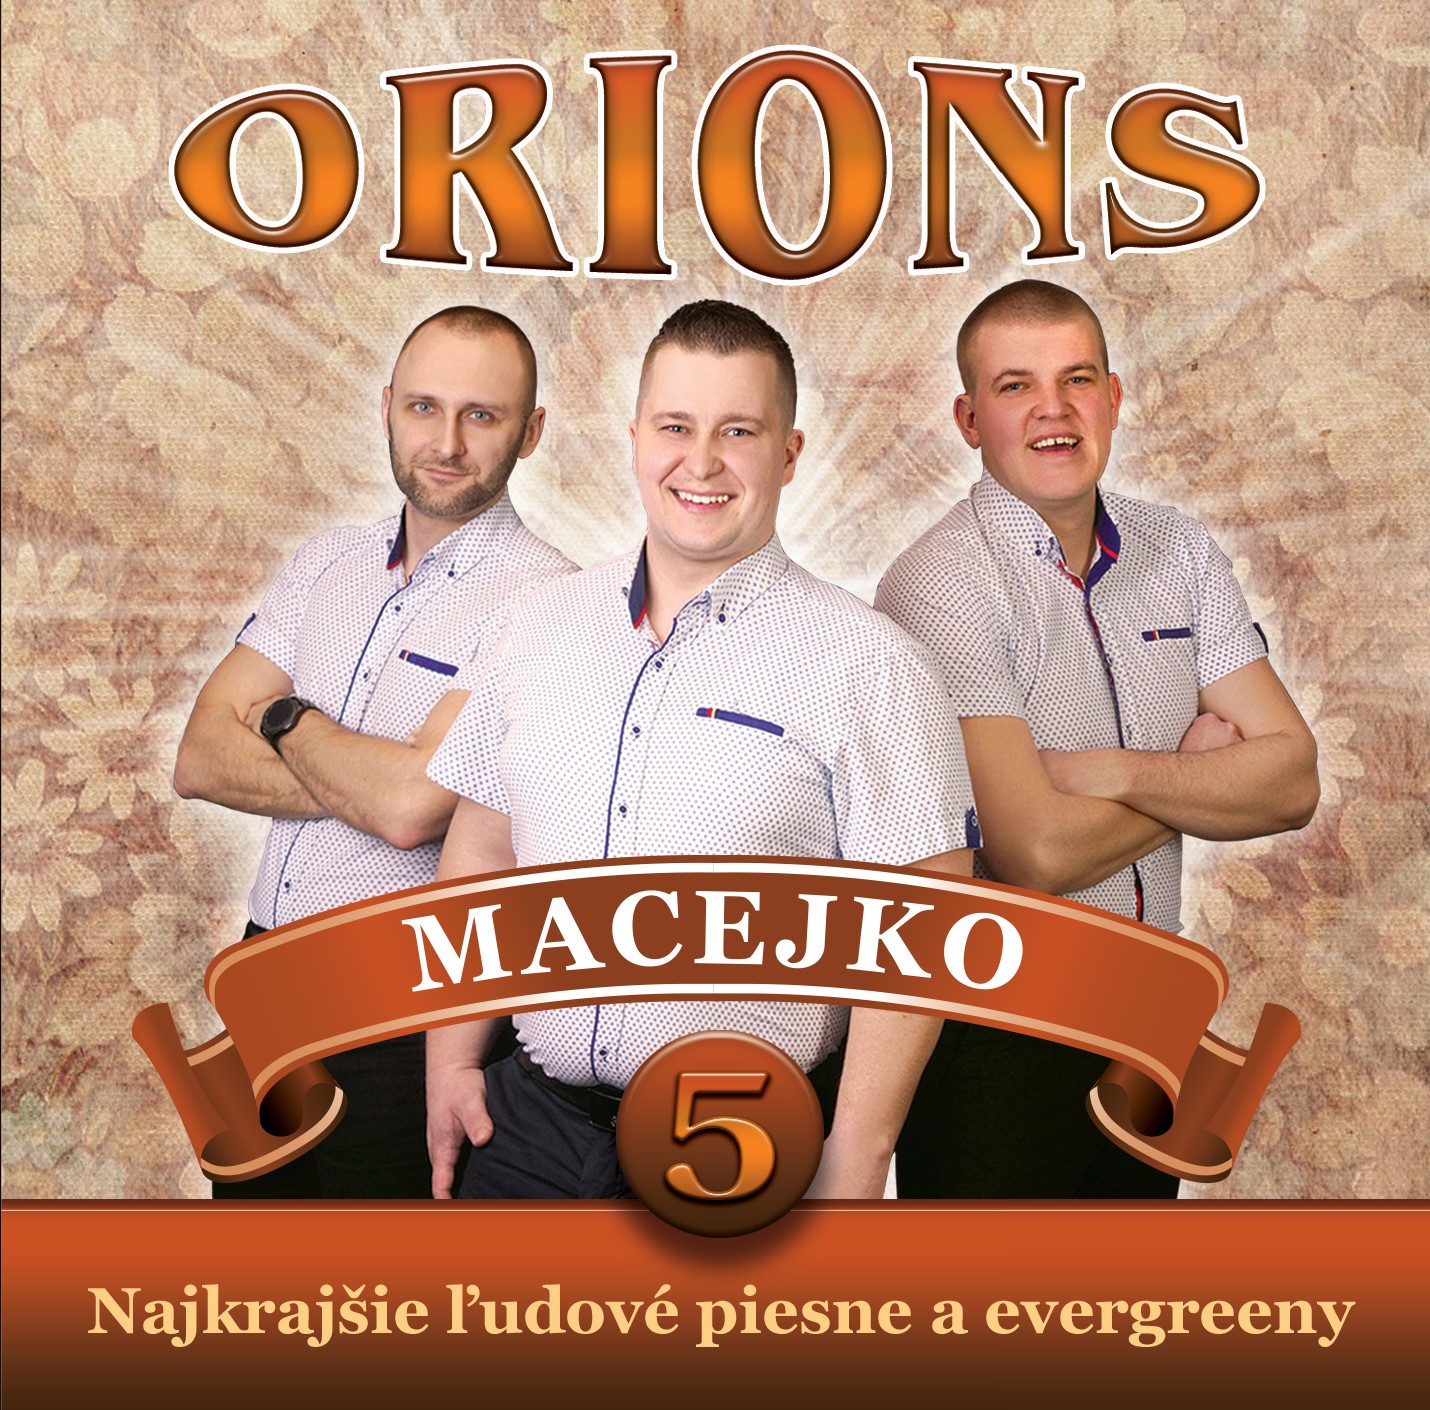 Orions - Macejko, Najkrajšie ľudové piesne a evergreeny č.5 (cd)